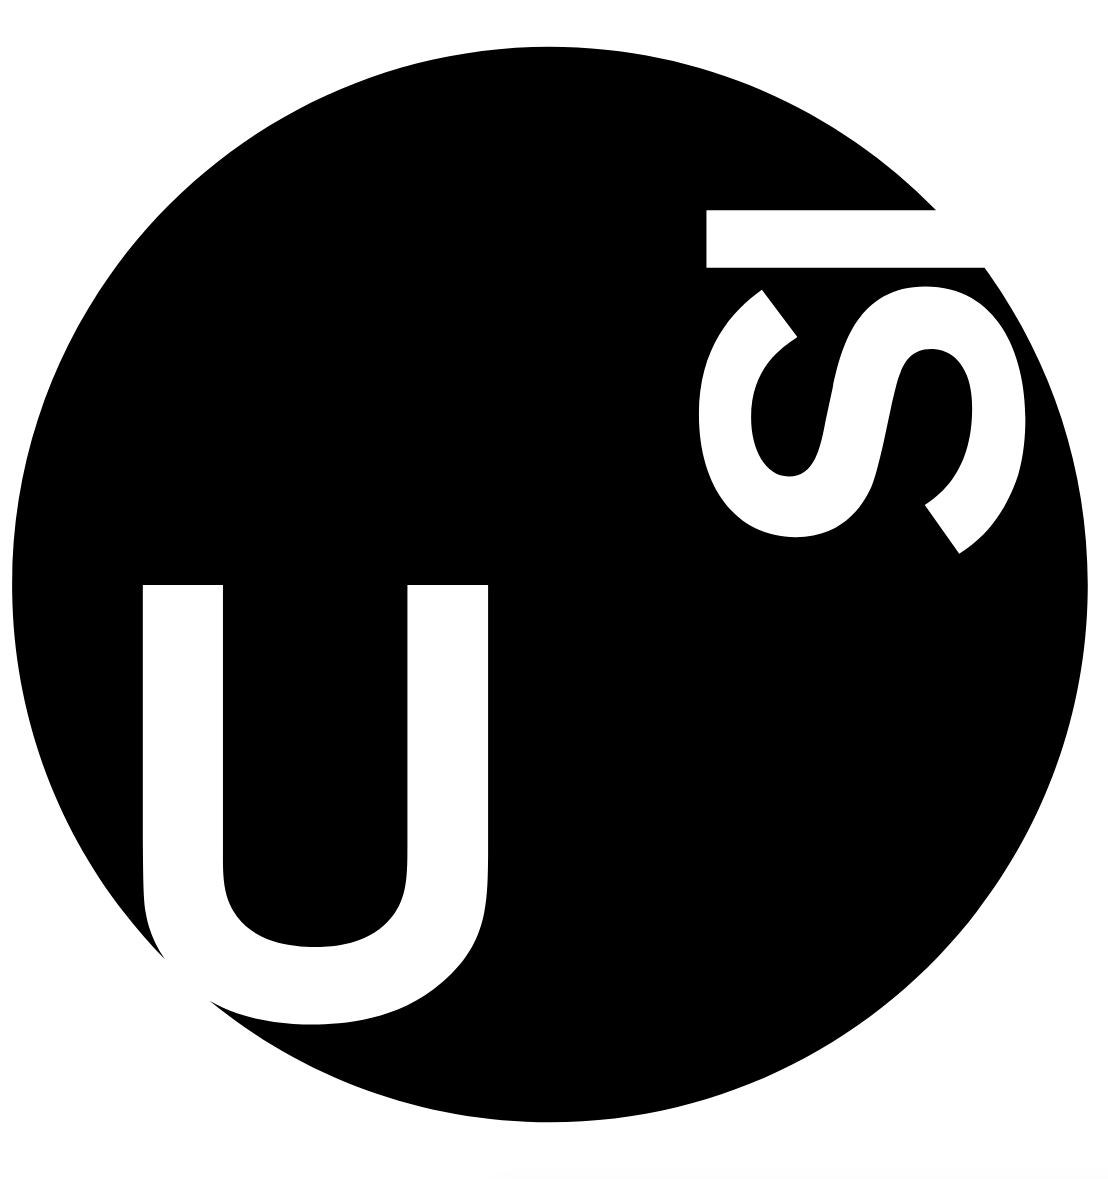 USI Institute of Computational Science